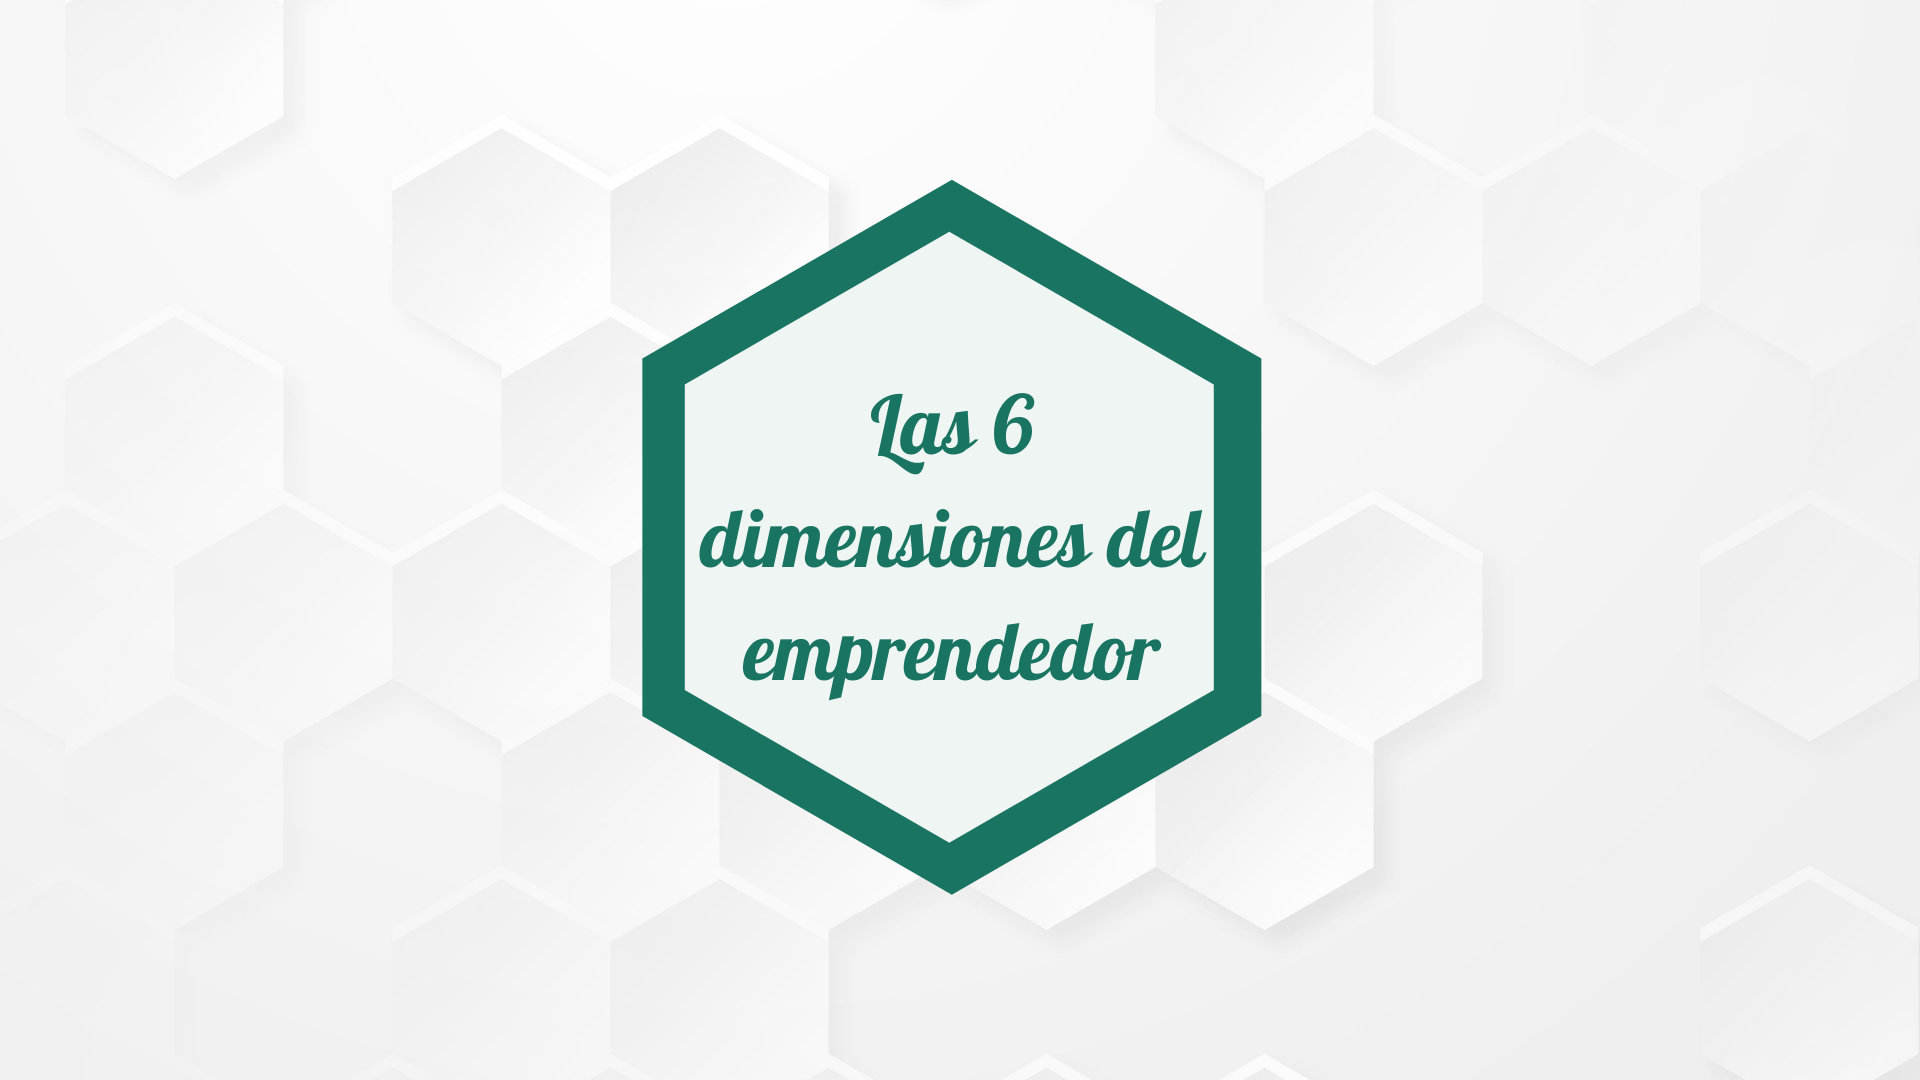 Las 6 dimensiones del emprendedor